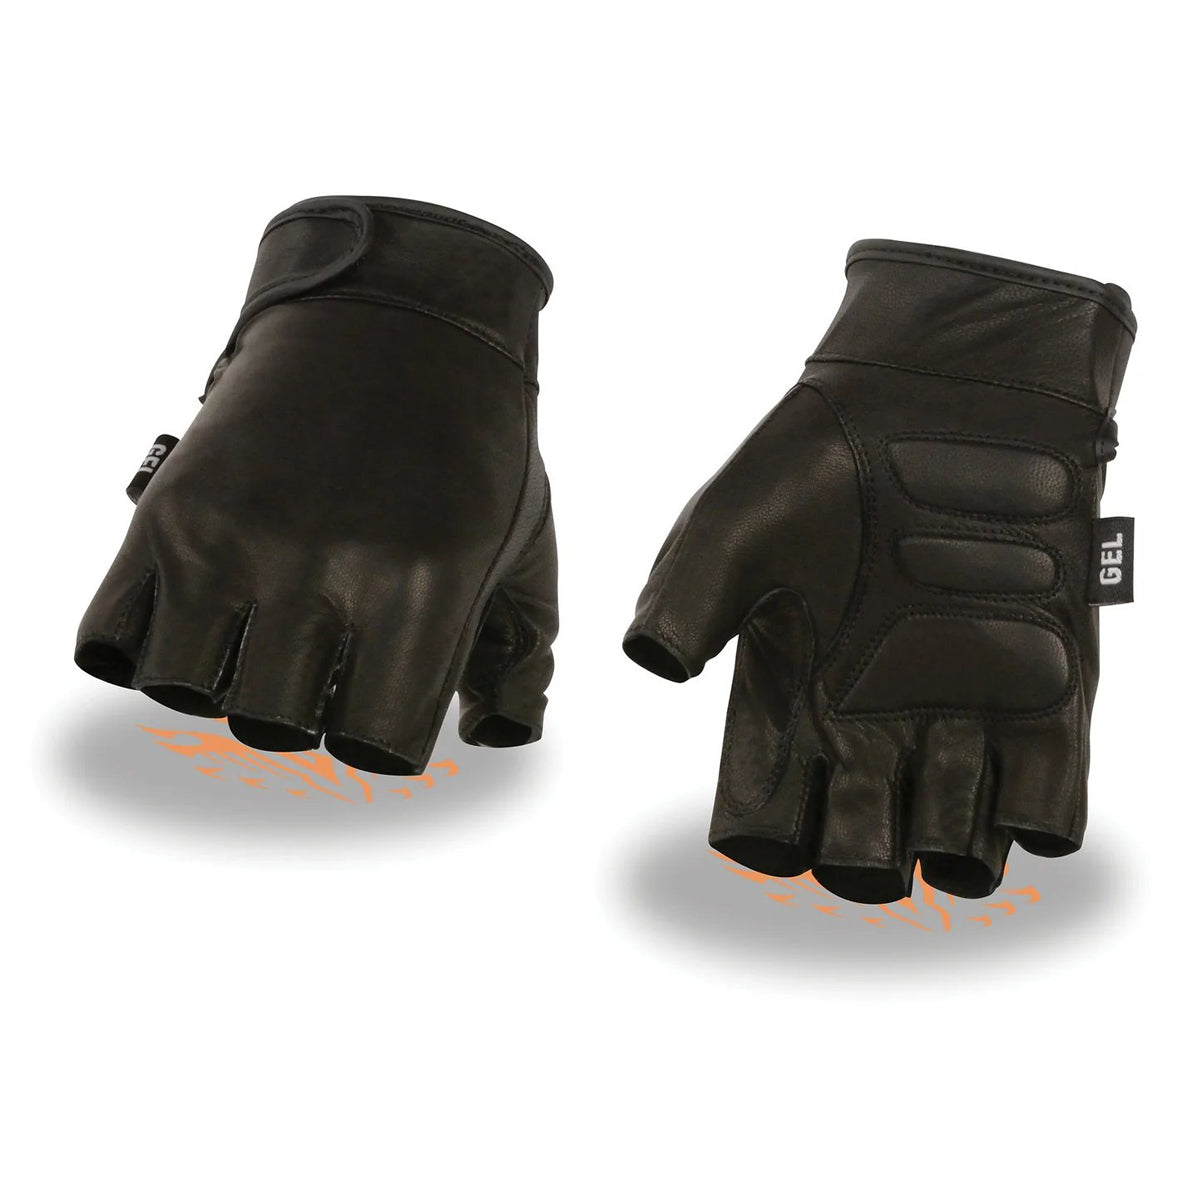 Men's Black Leather Gel Padded Palm Fingerless Motorcycle Hand Gloves w/ Full Panel Cover